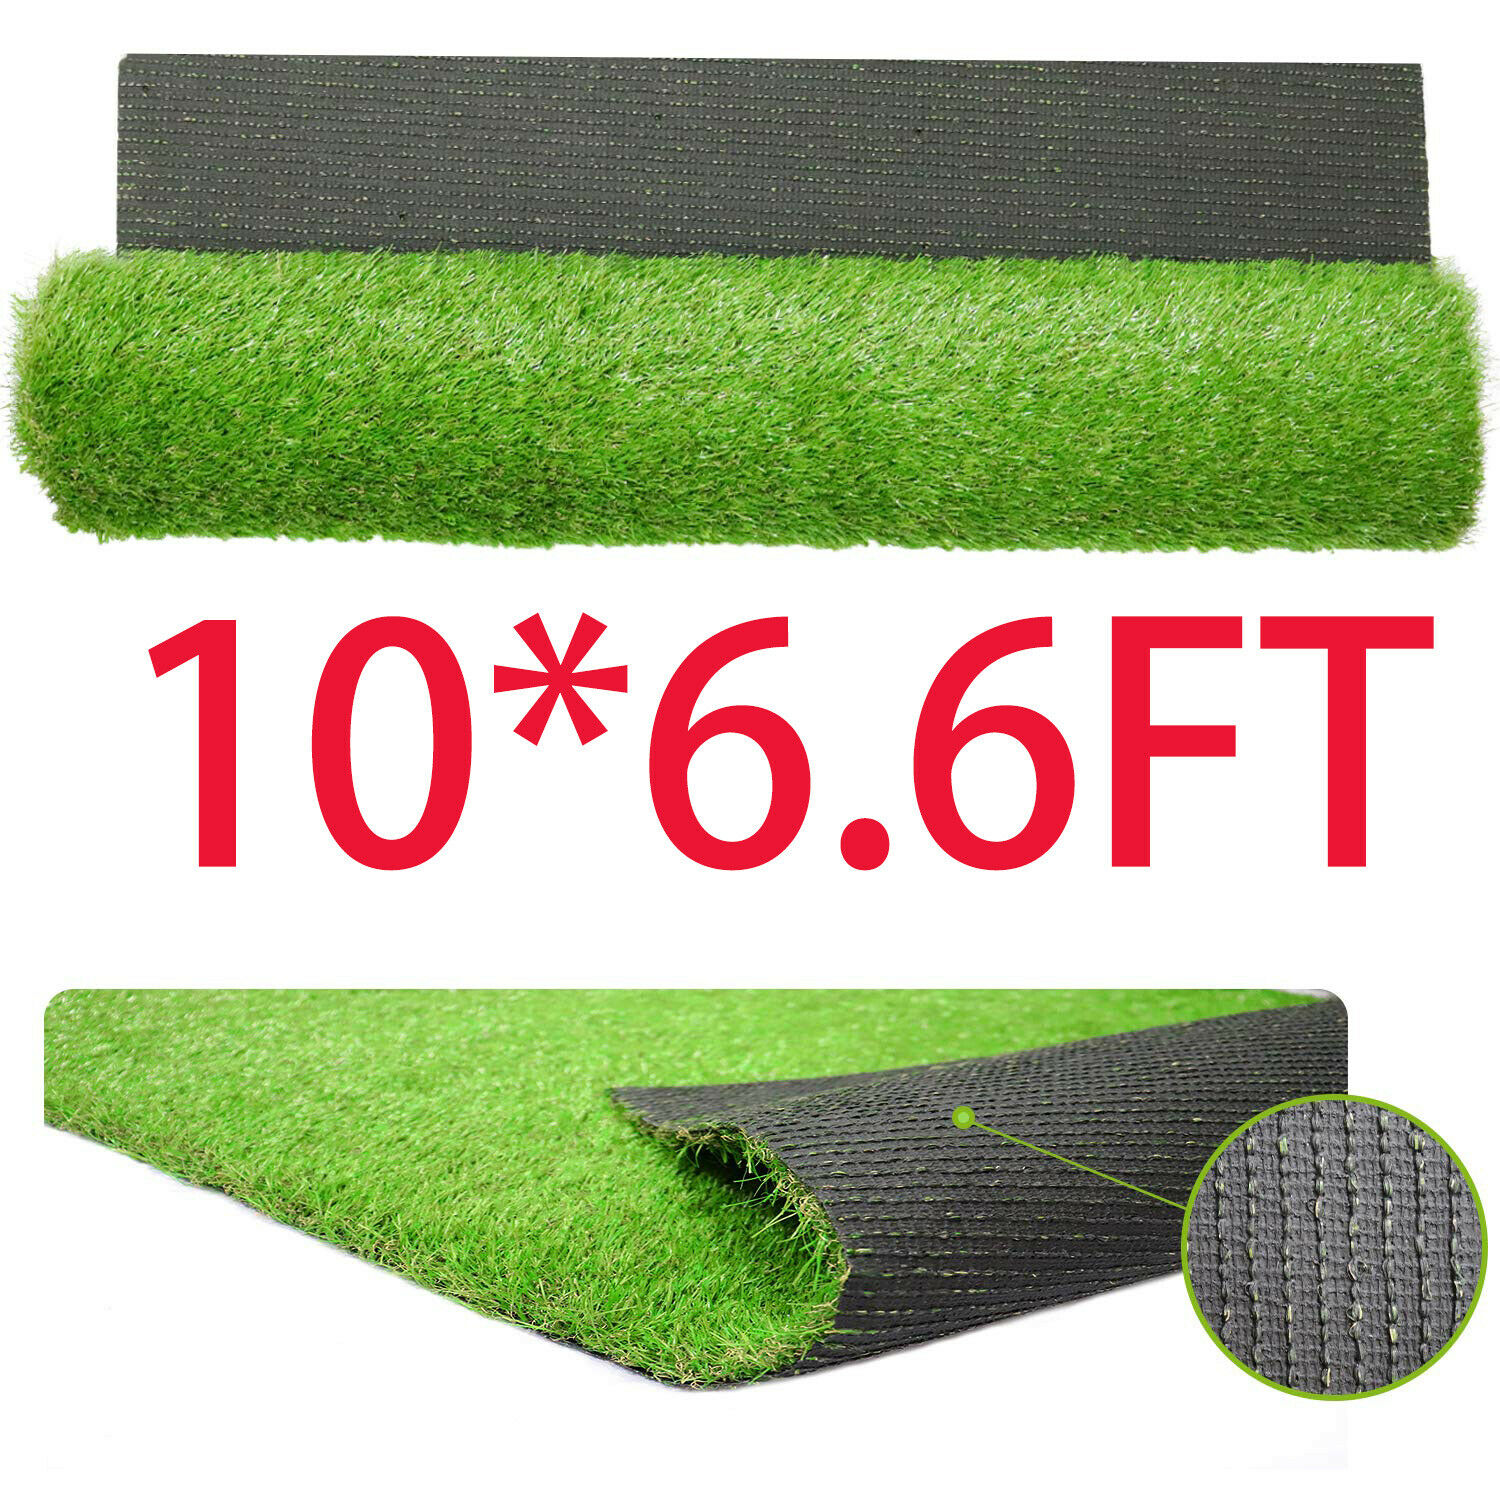 10x6.6 Ft Artificial Grass Floor Mat Synthetic Landscape Lawn Turf Garden Carpet